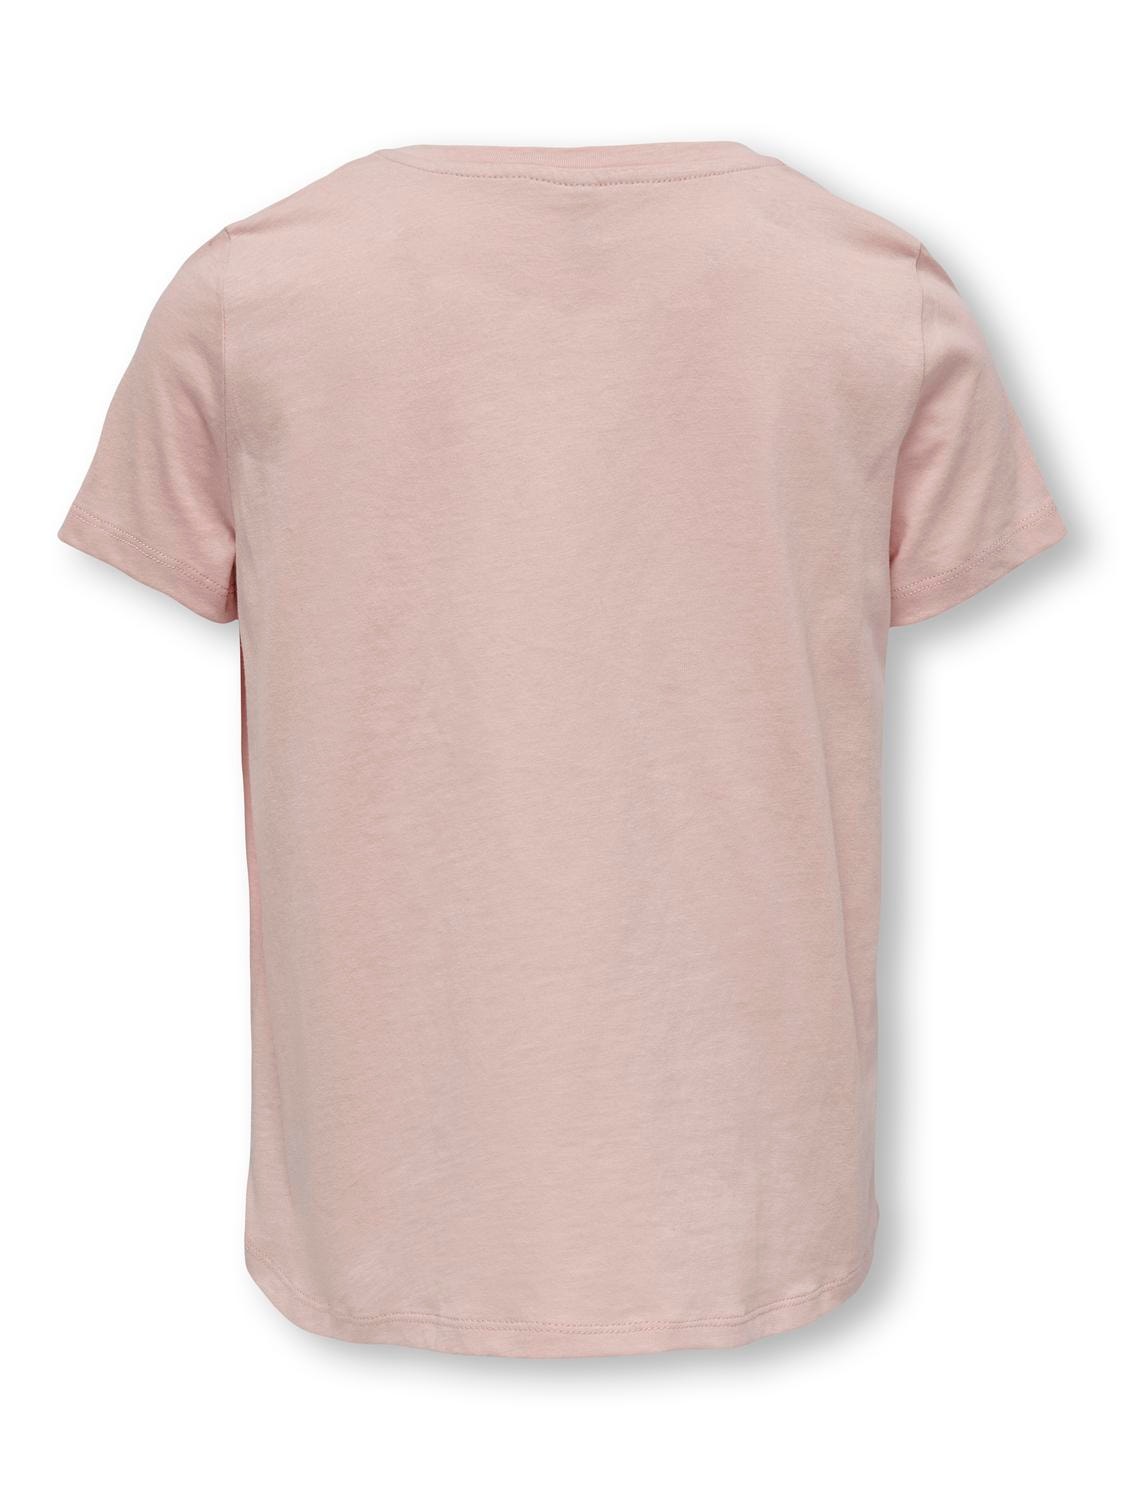 ONLY Krój volume Okragly dekolt T-shirt -Rose Smoke - 15285374